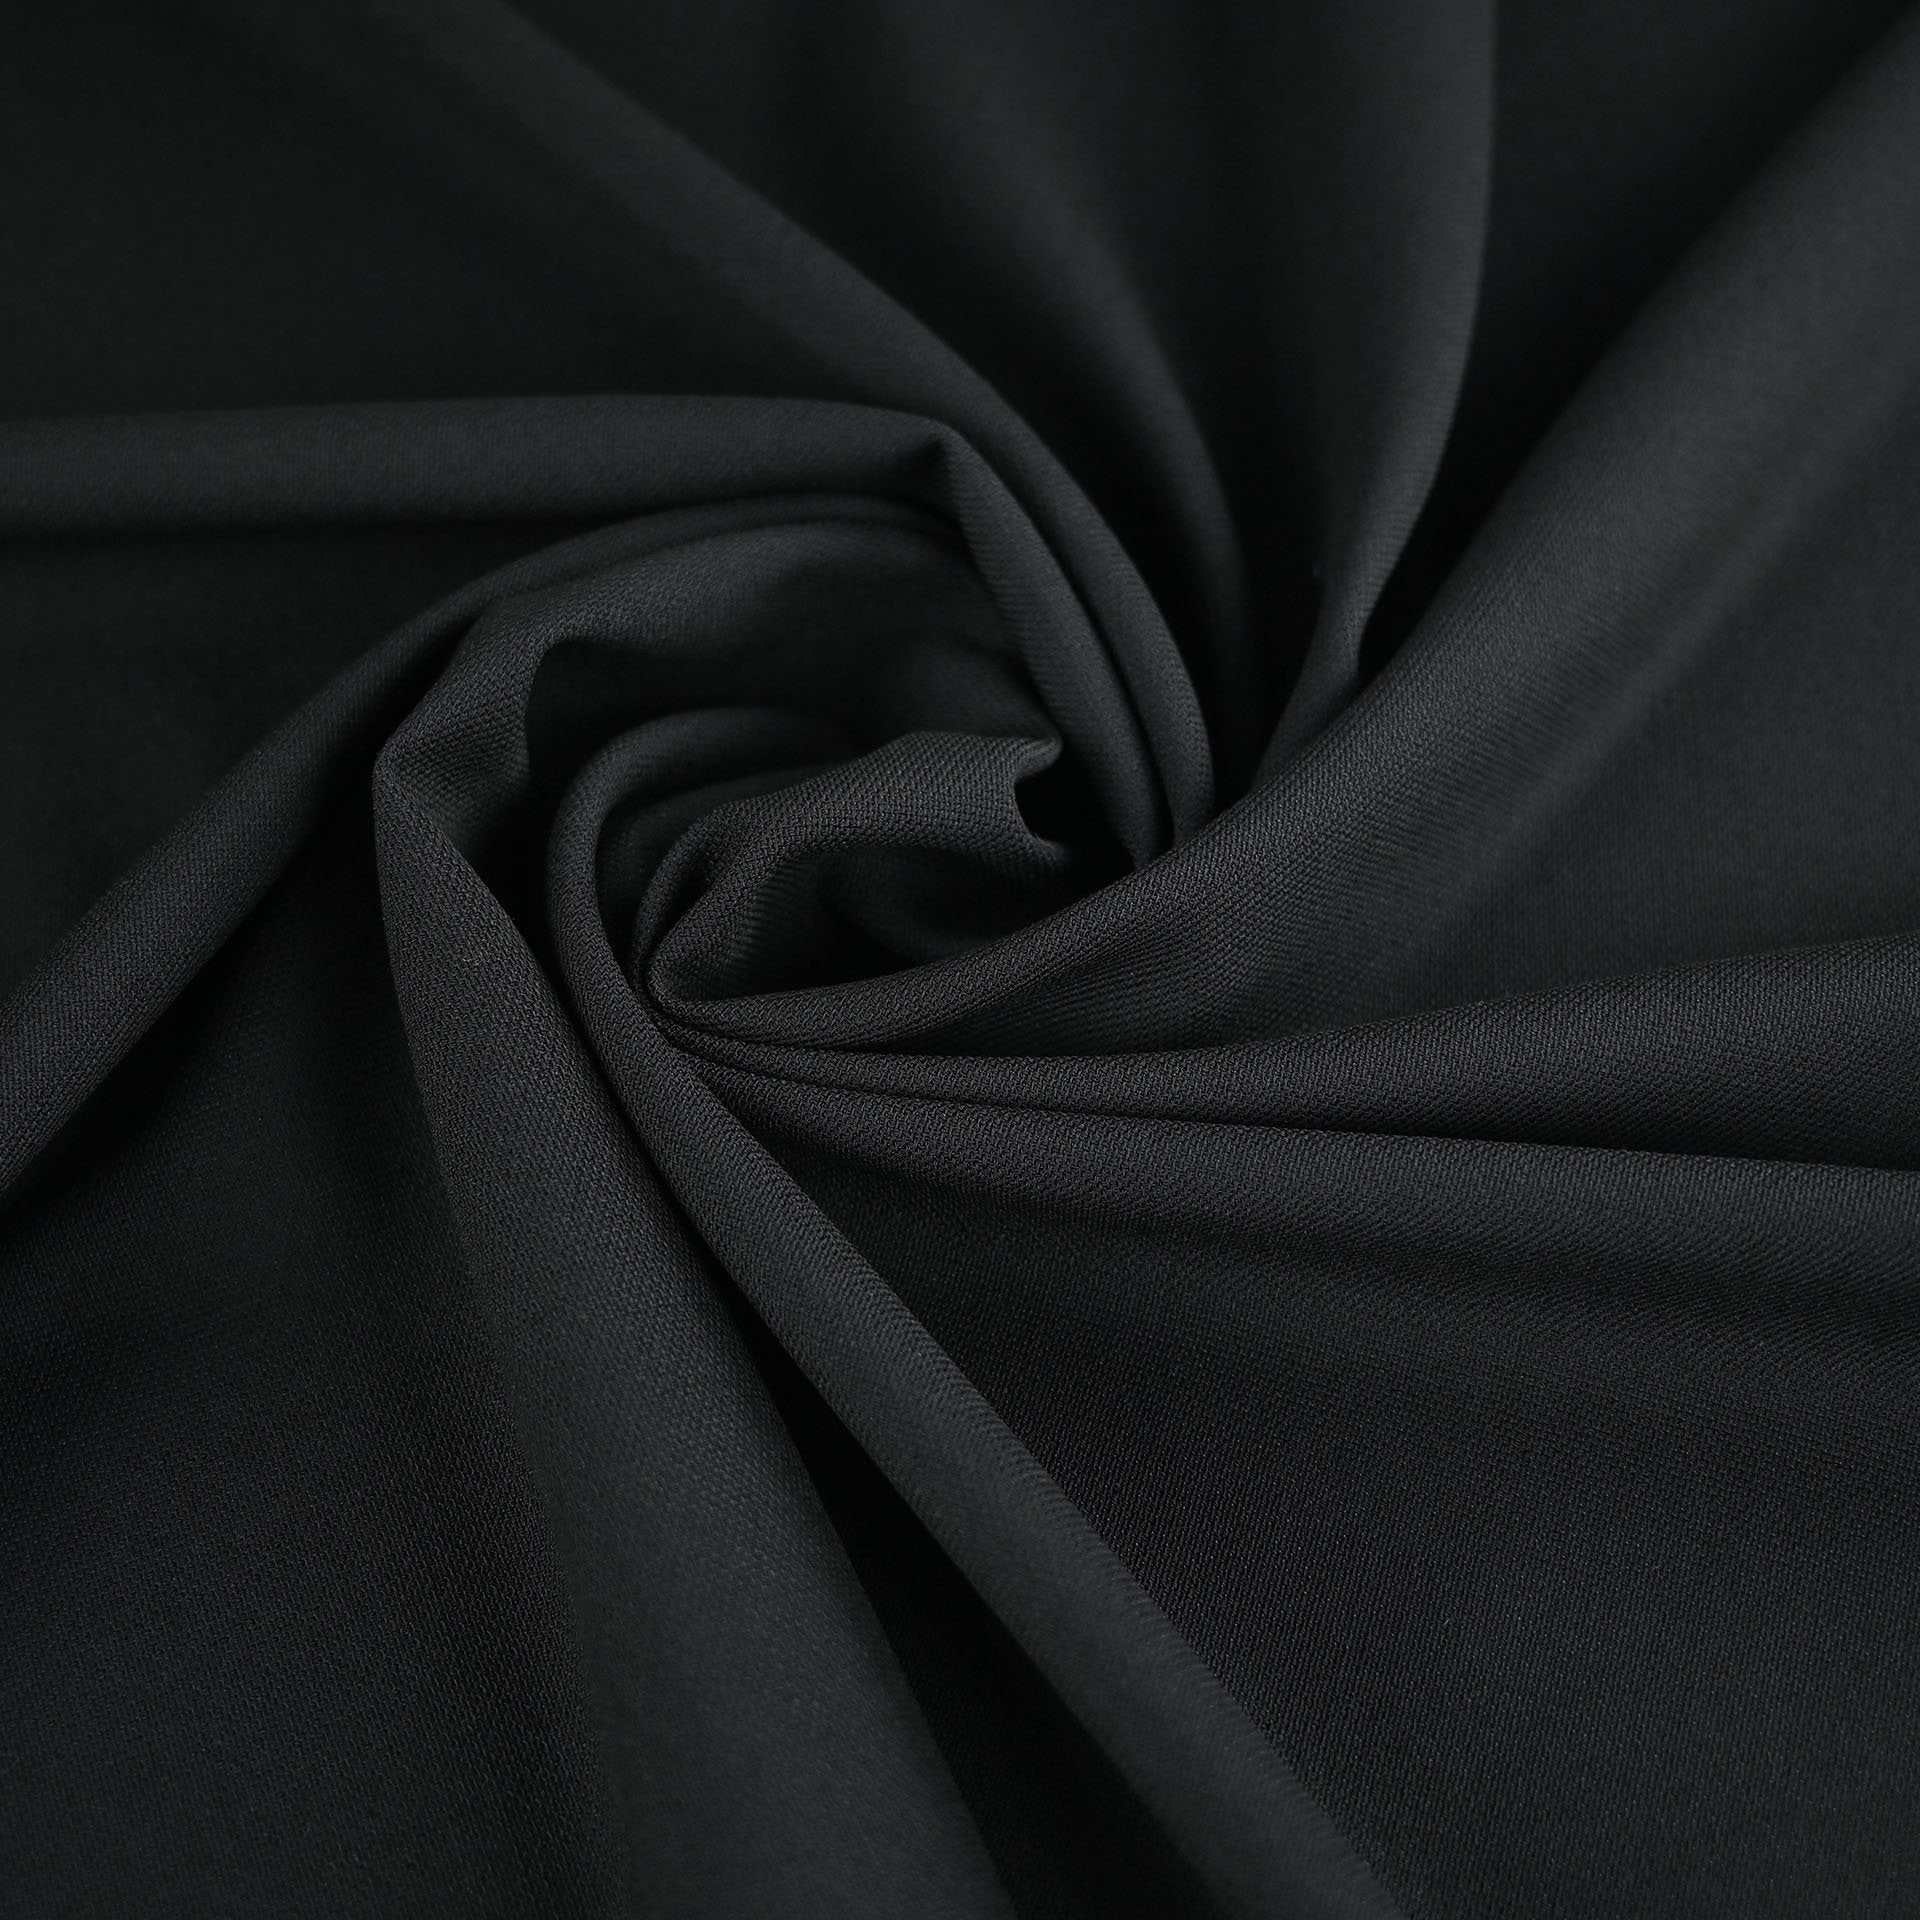 Black Wool Stretch Fabric 4059 - Fabrics4fashion